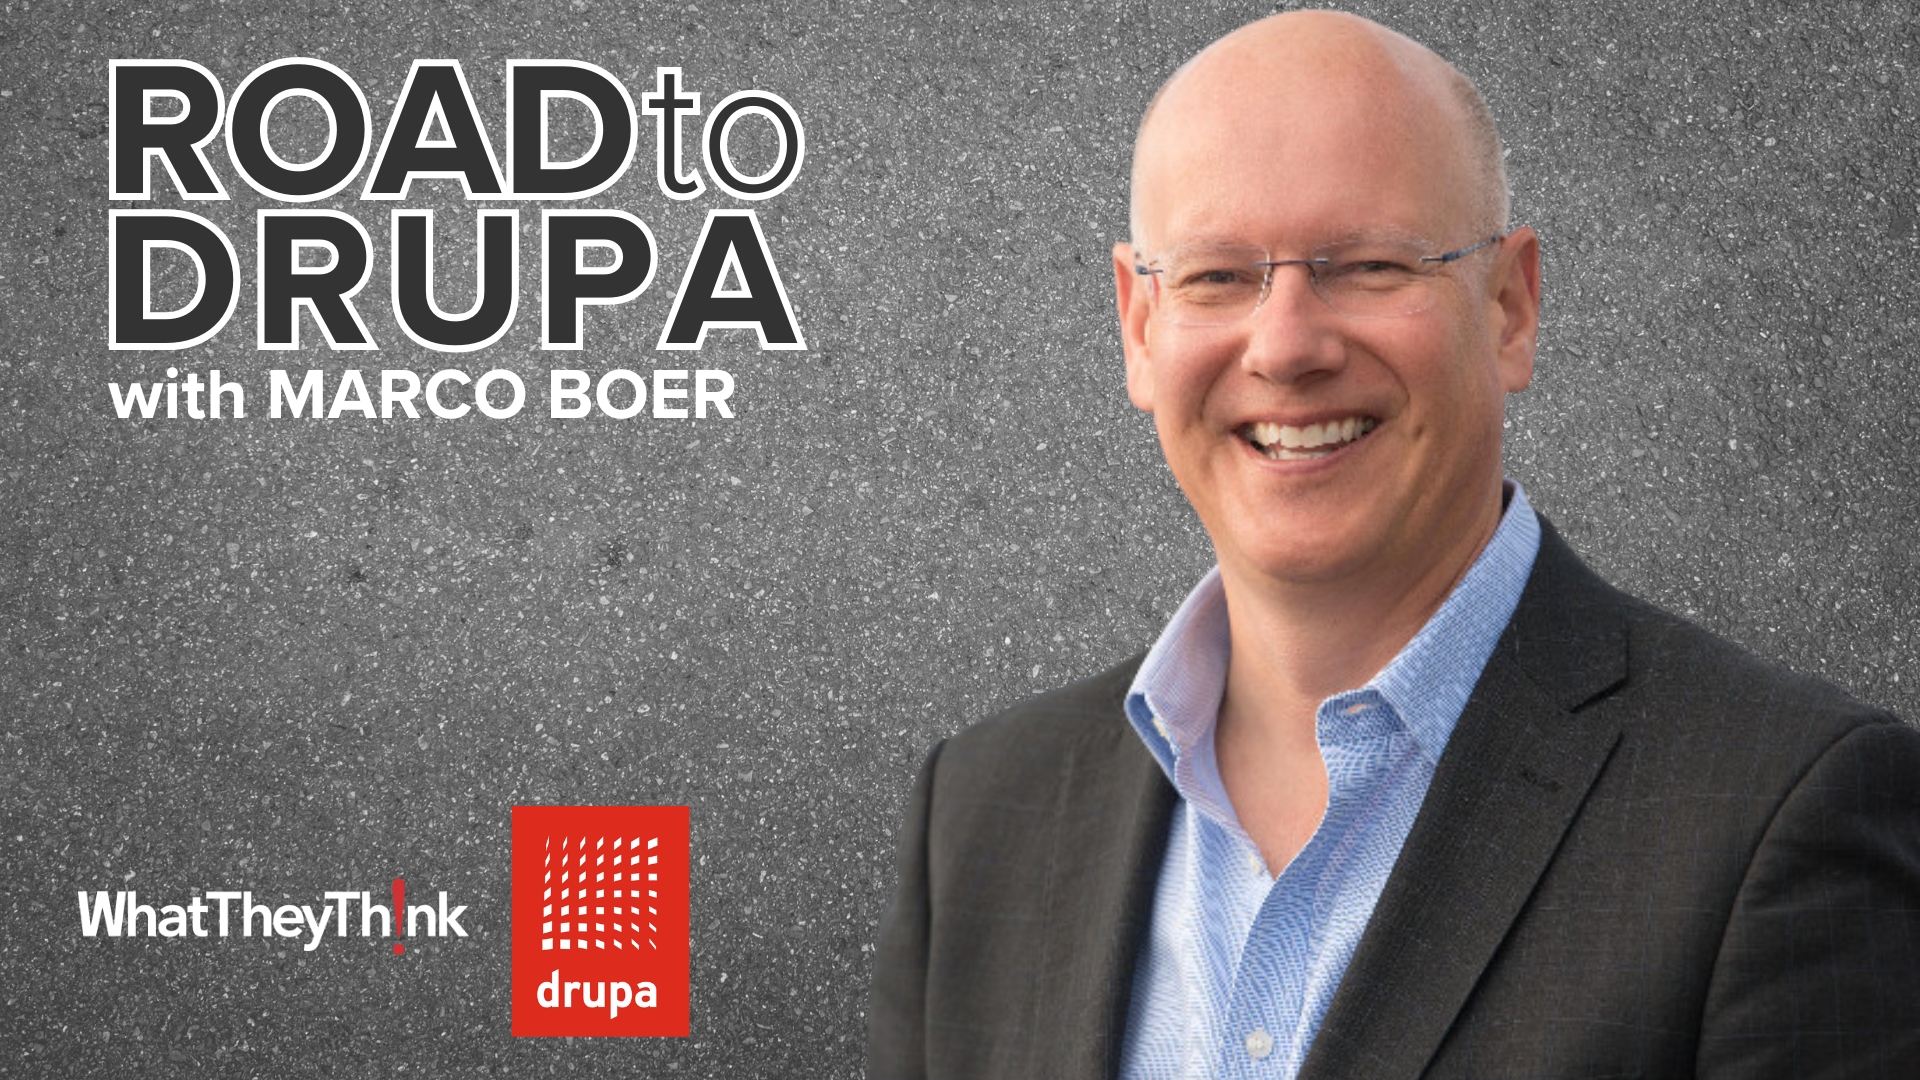 Road to drupa: Marco Boer